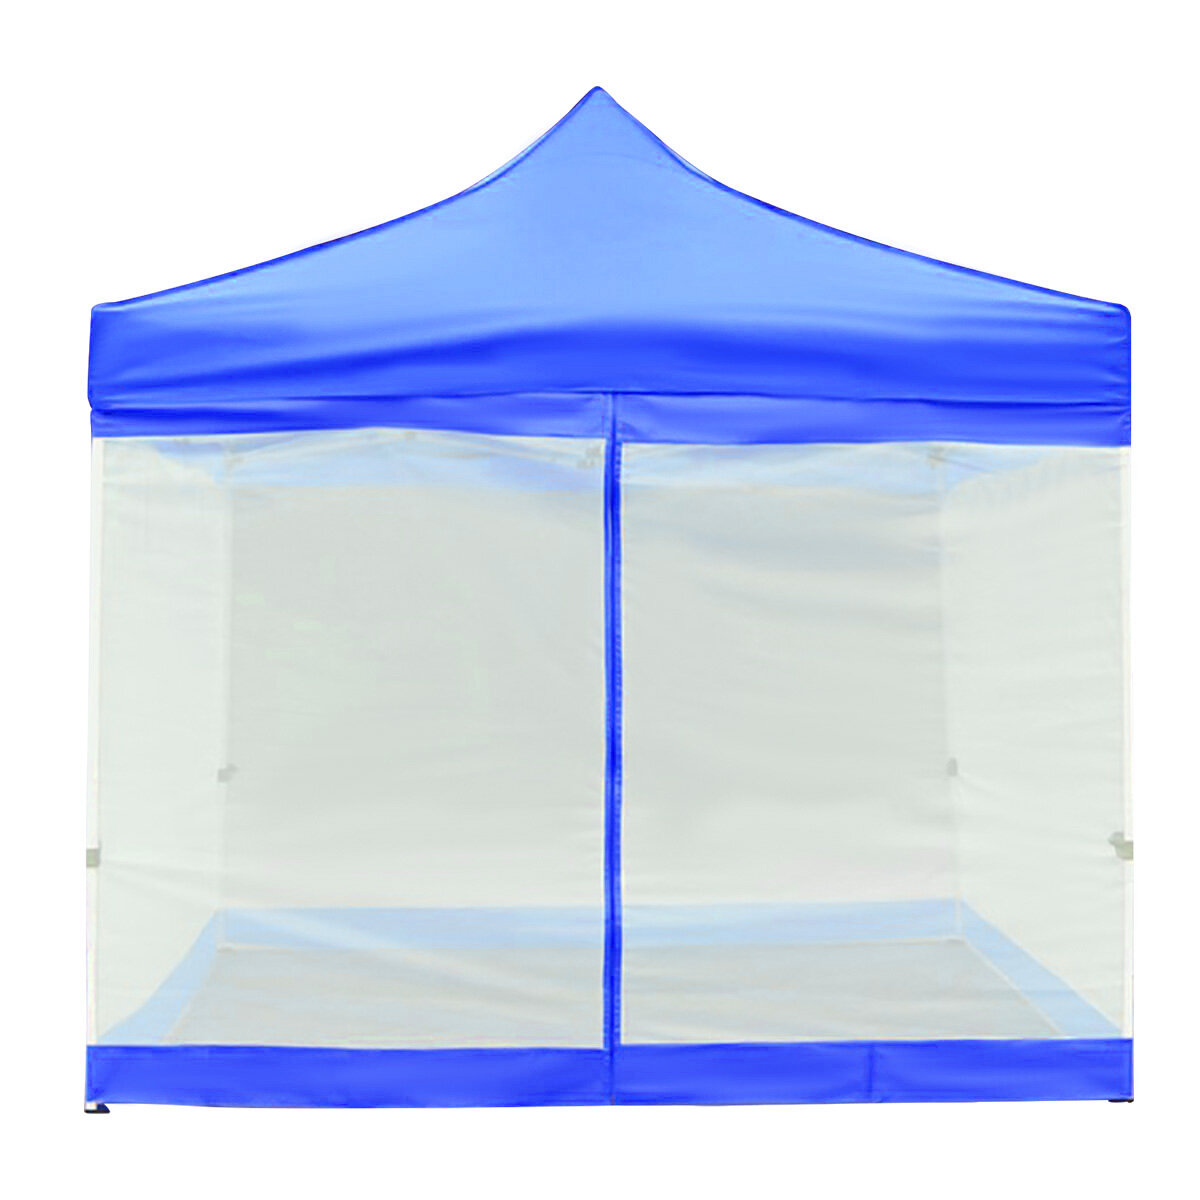 Палатка для пляжа и кемпинга размером 9,8x9,8 футов с москитной сеткой для отпугивания насекомых